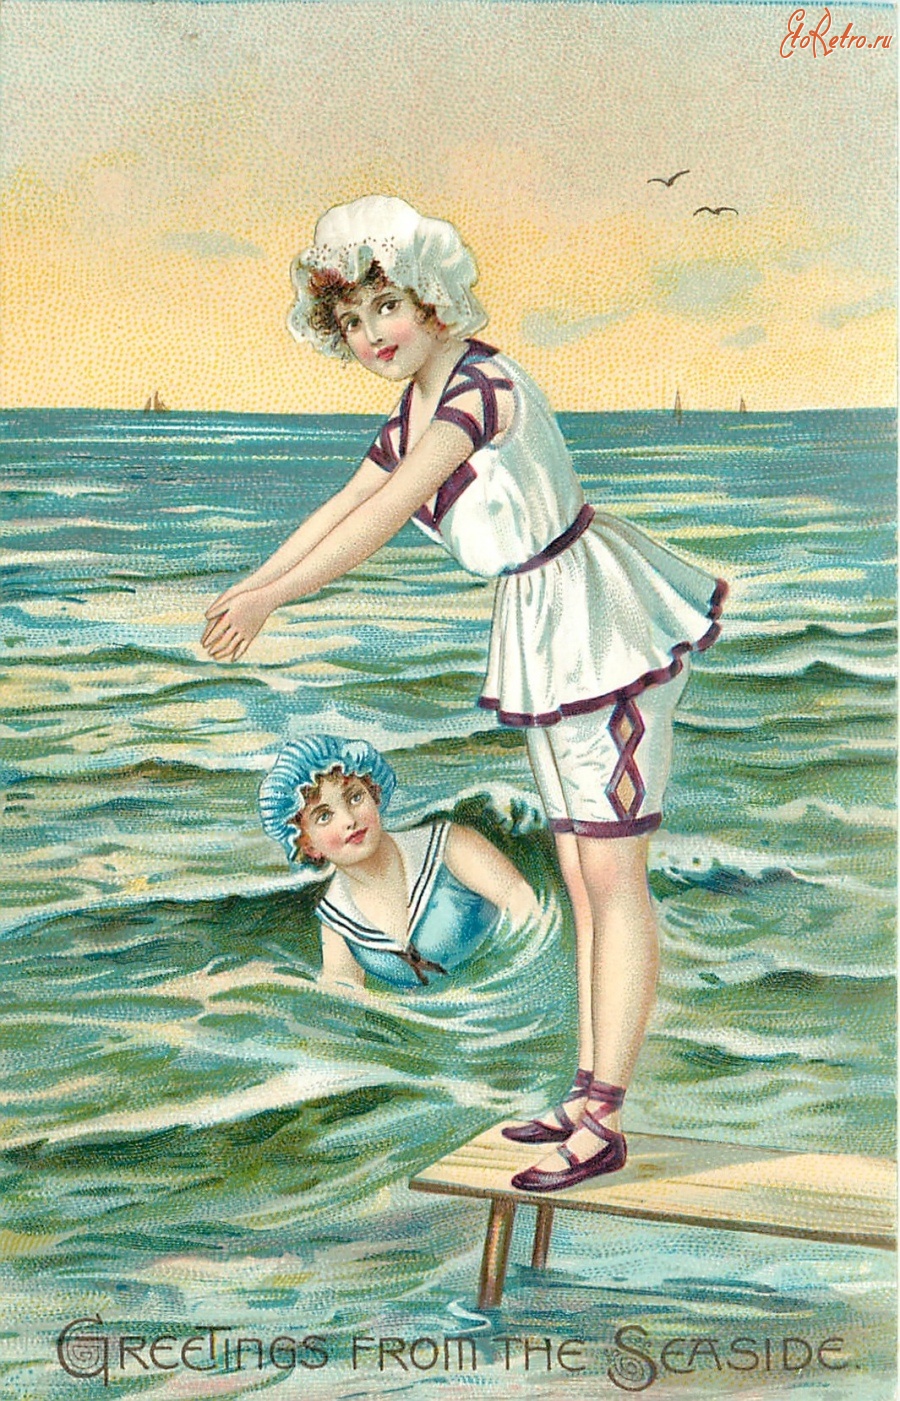 Ретро открытки - Девушка в белом купальнике у моря